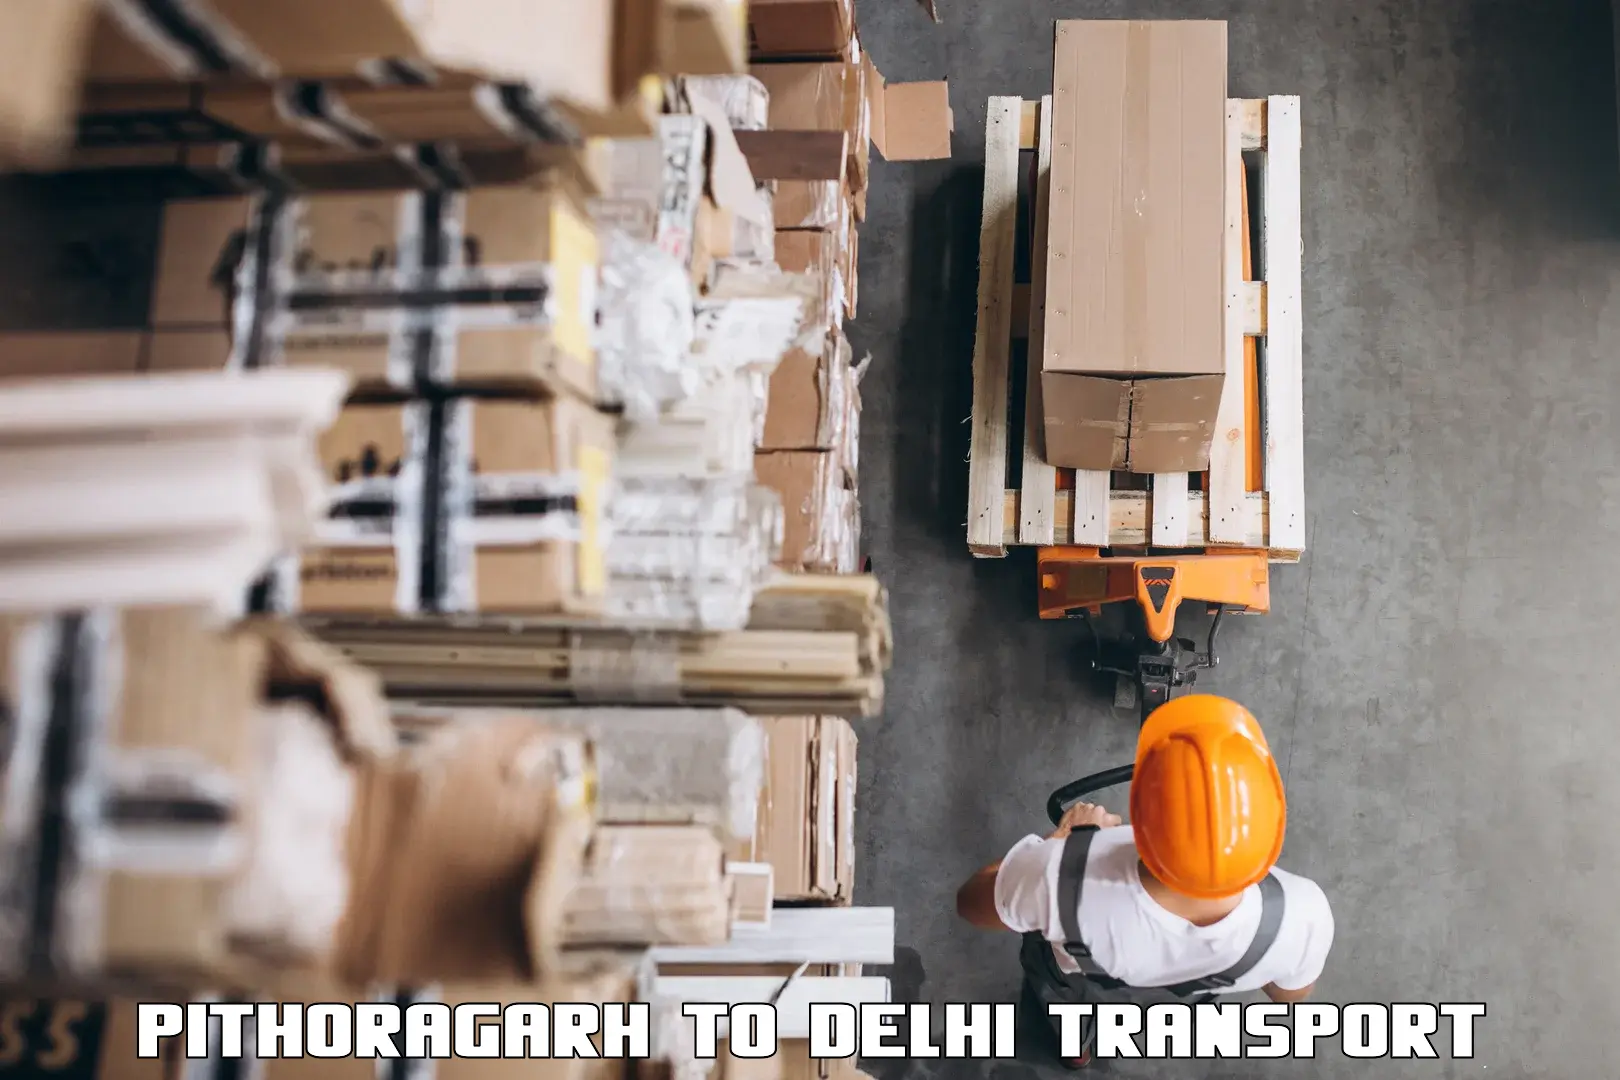 Pick up transport service Pithoragarh to IIT Delhi